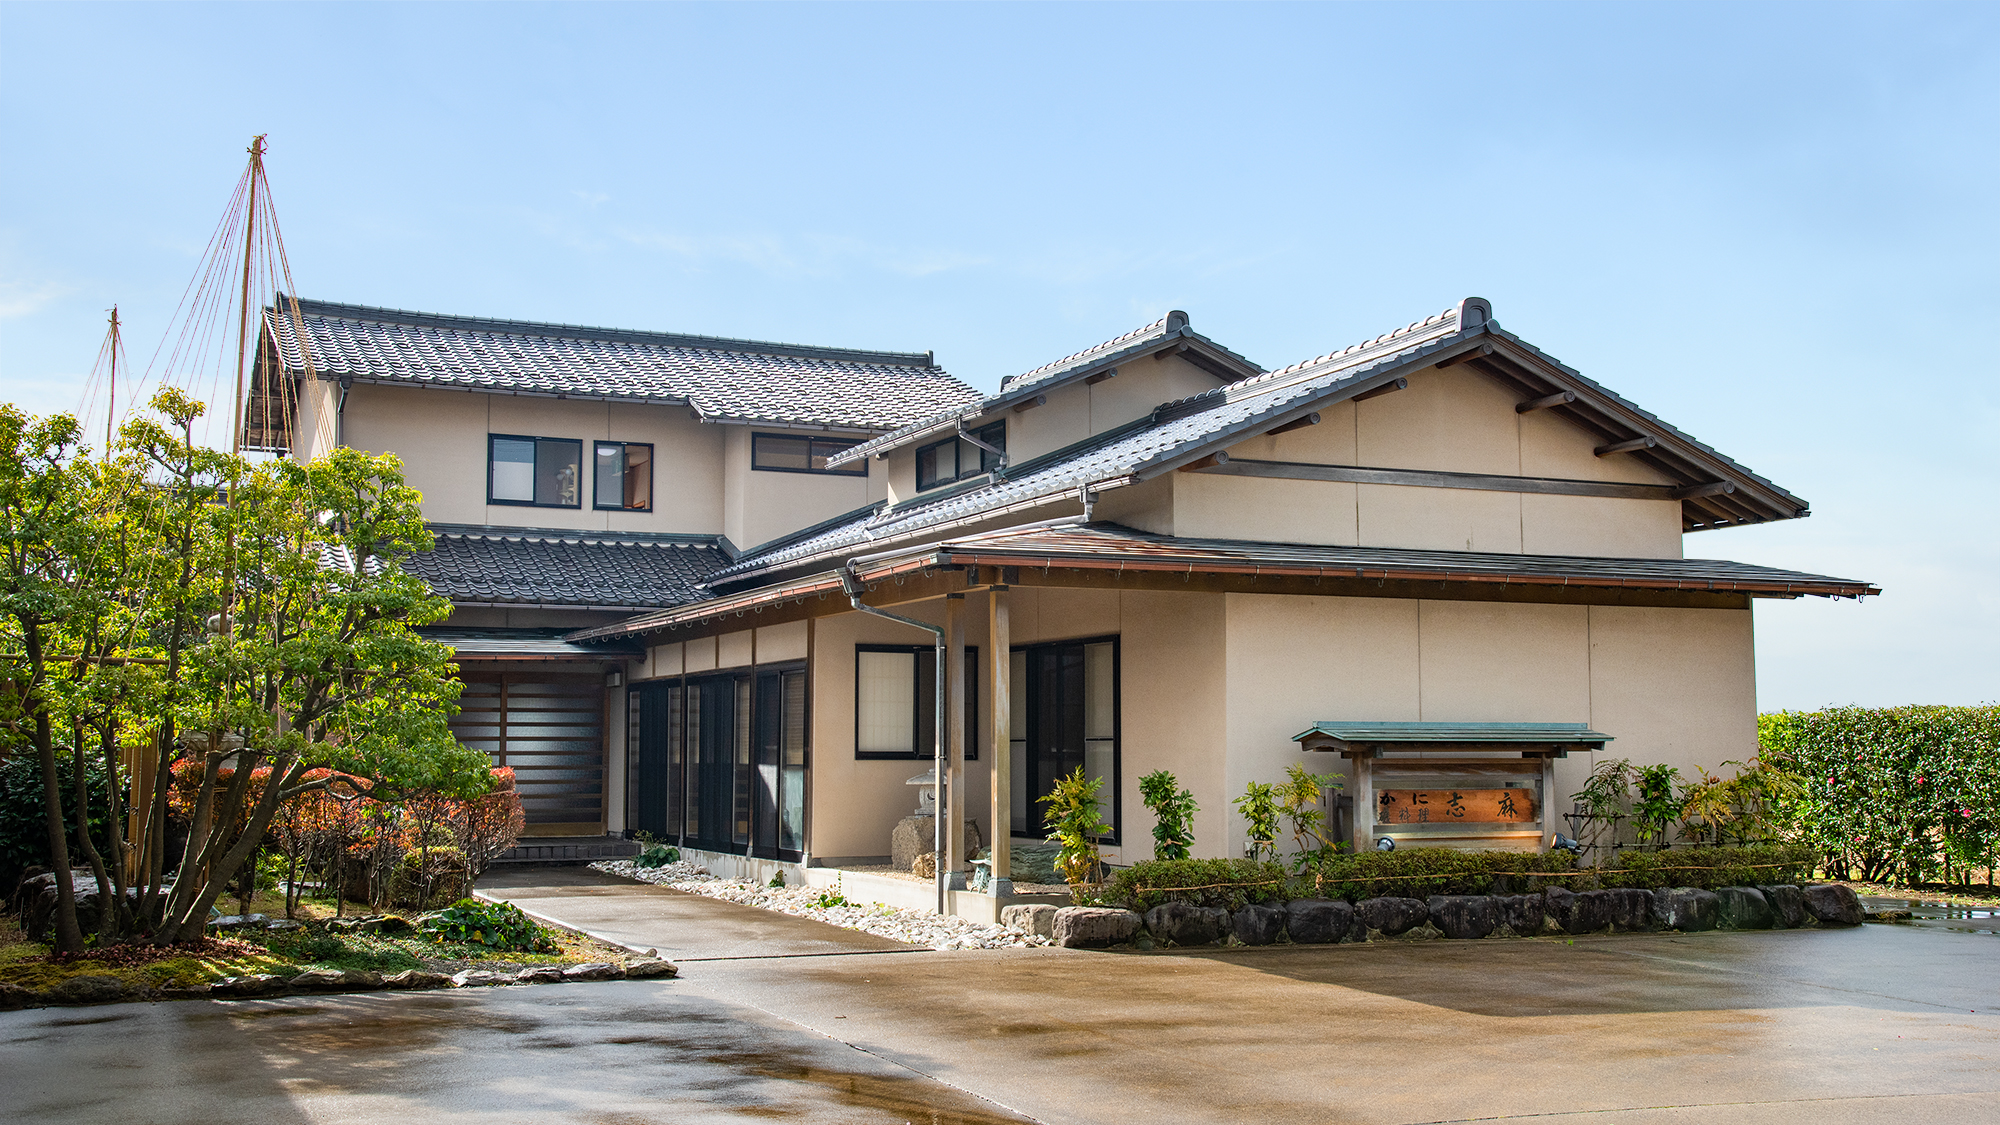 石川県 泊まってよかった 高級ホテル 旅館ランキング 22